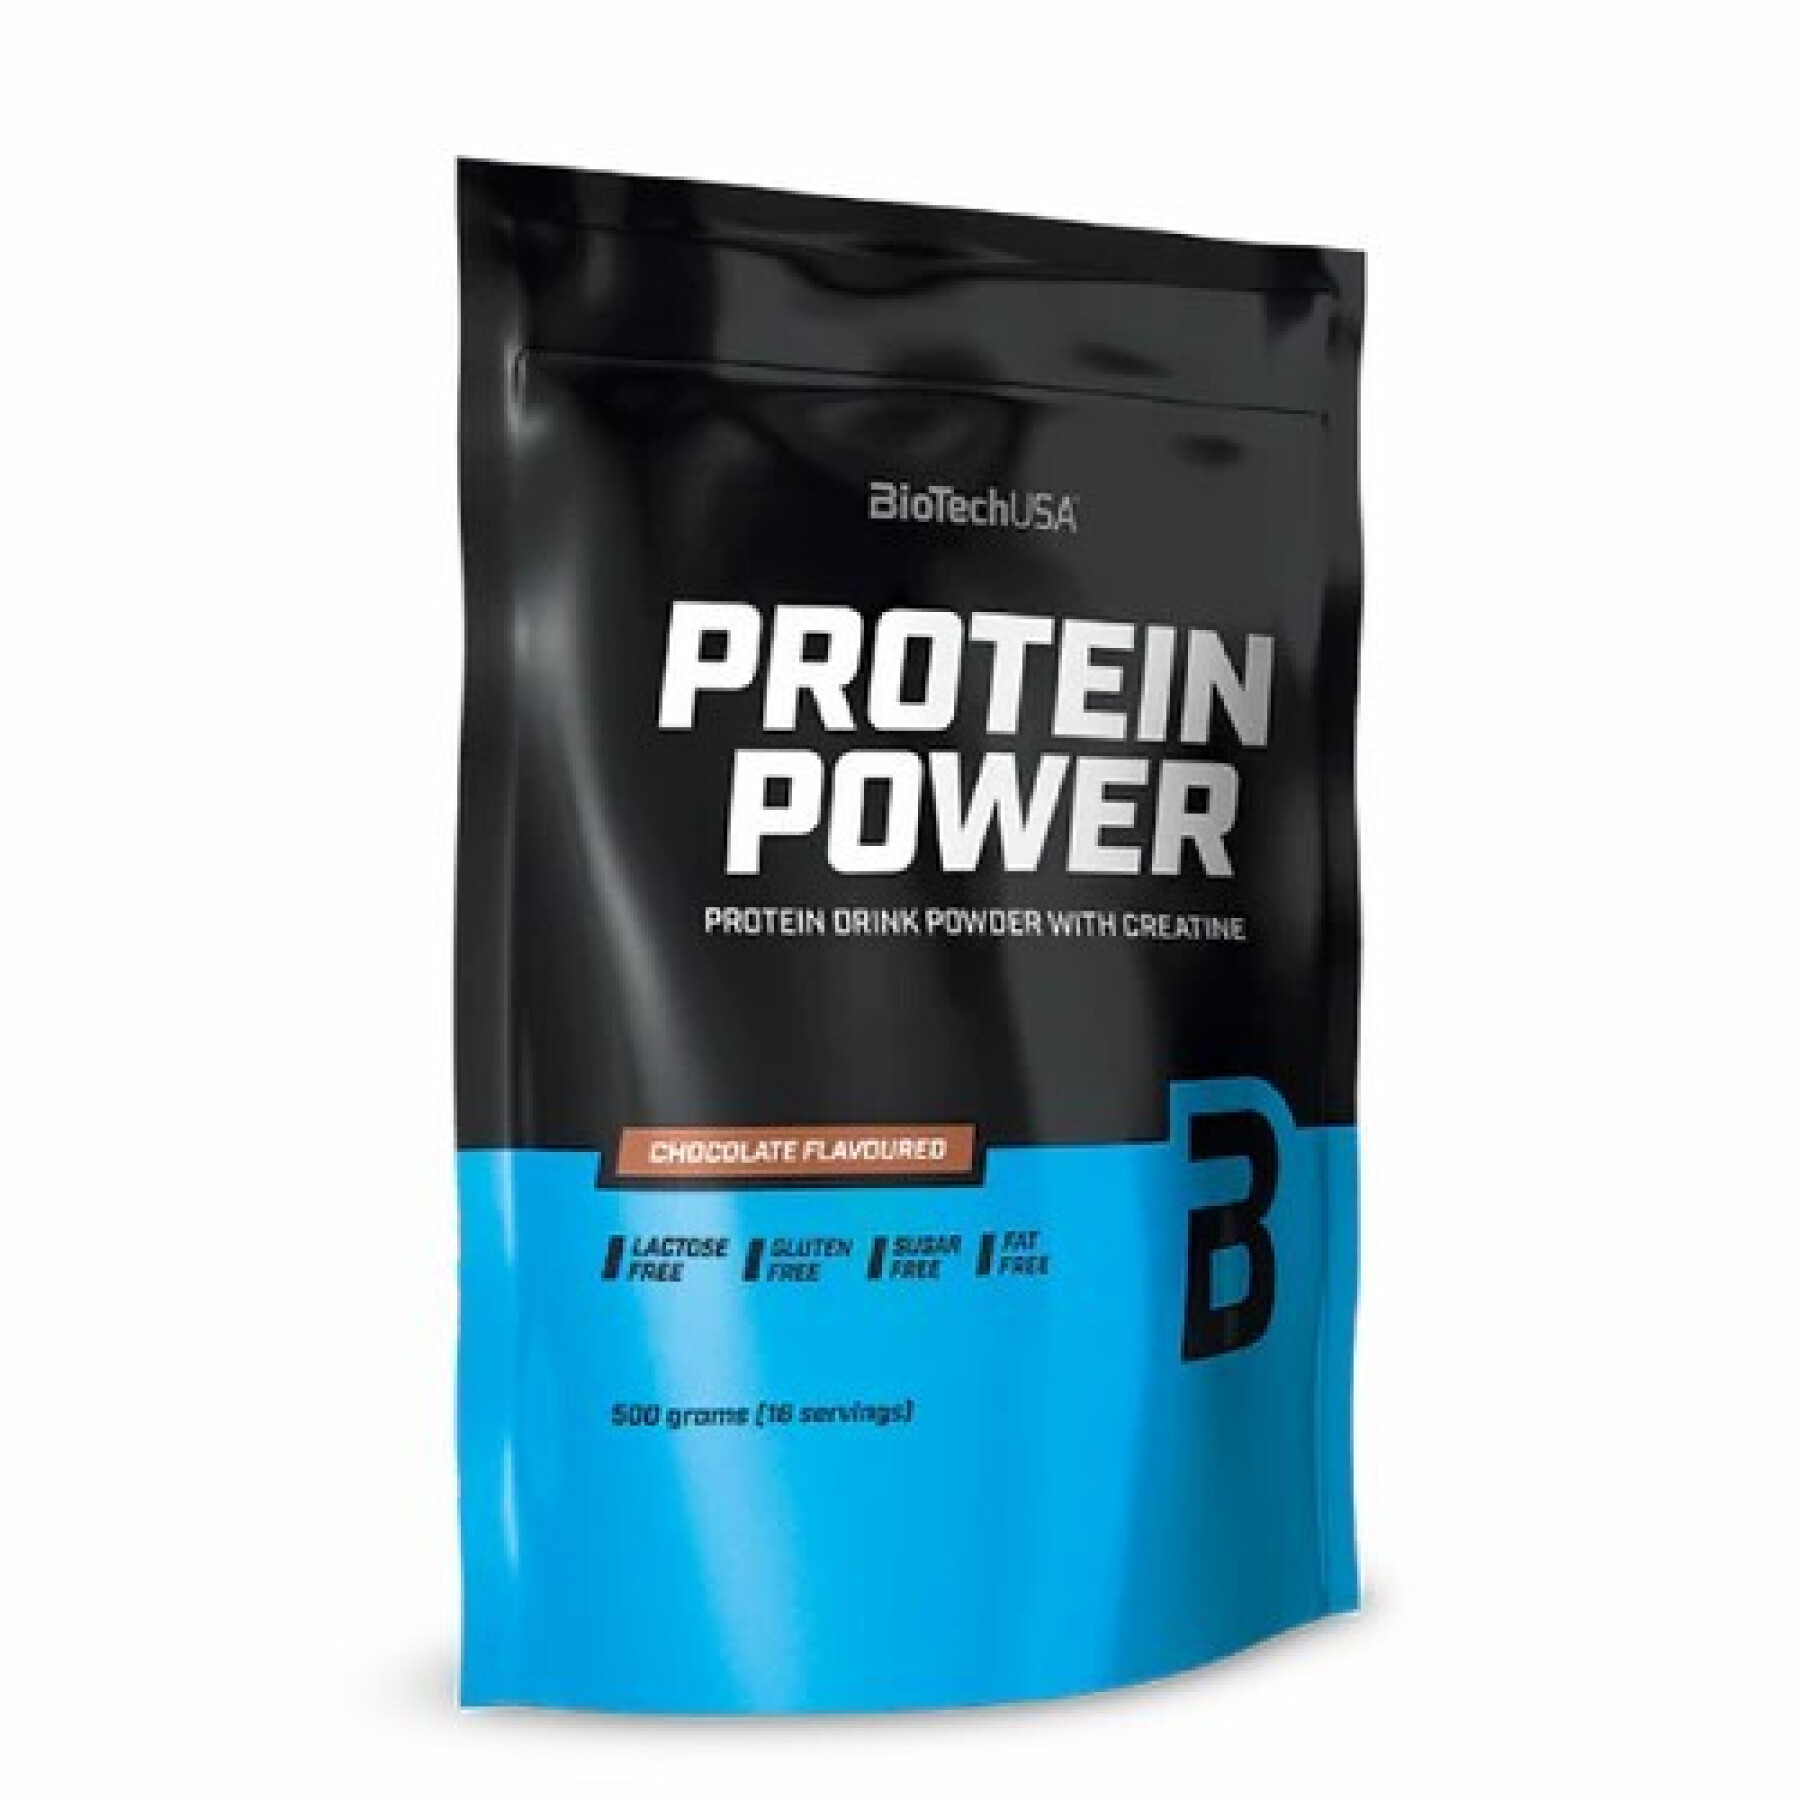 Proteína - Babane de morango Biotech USA Protein Power